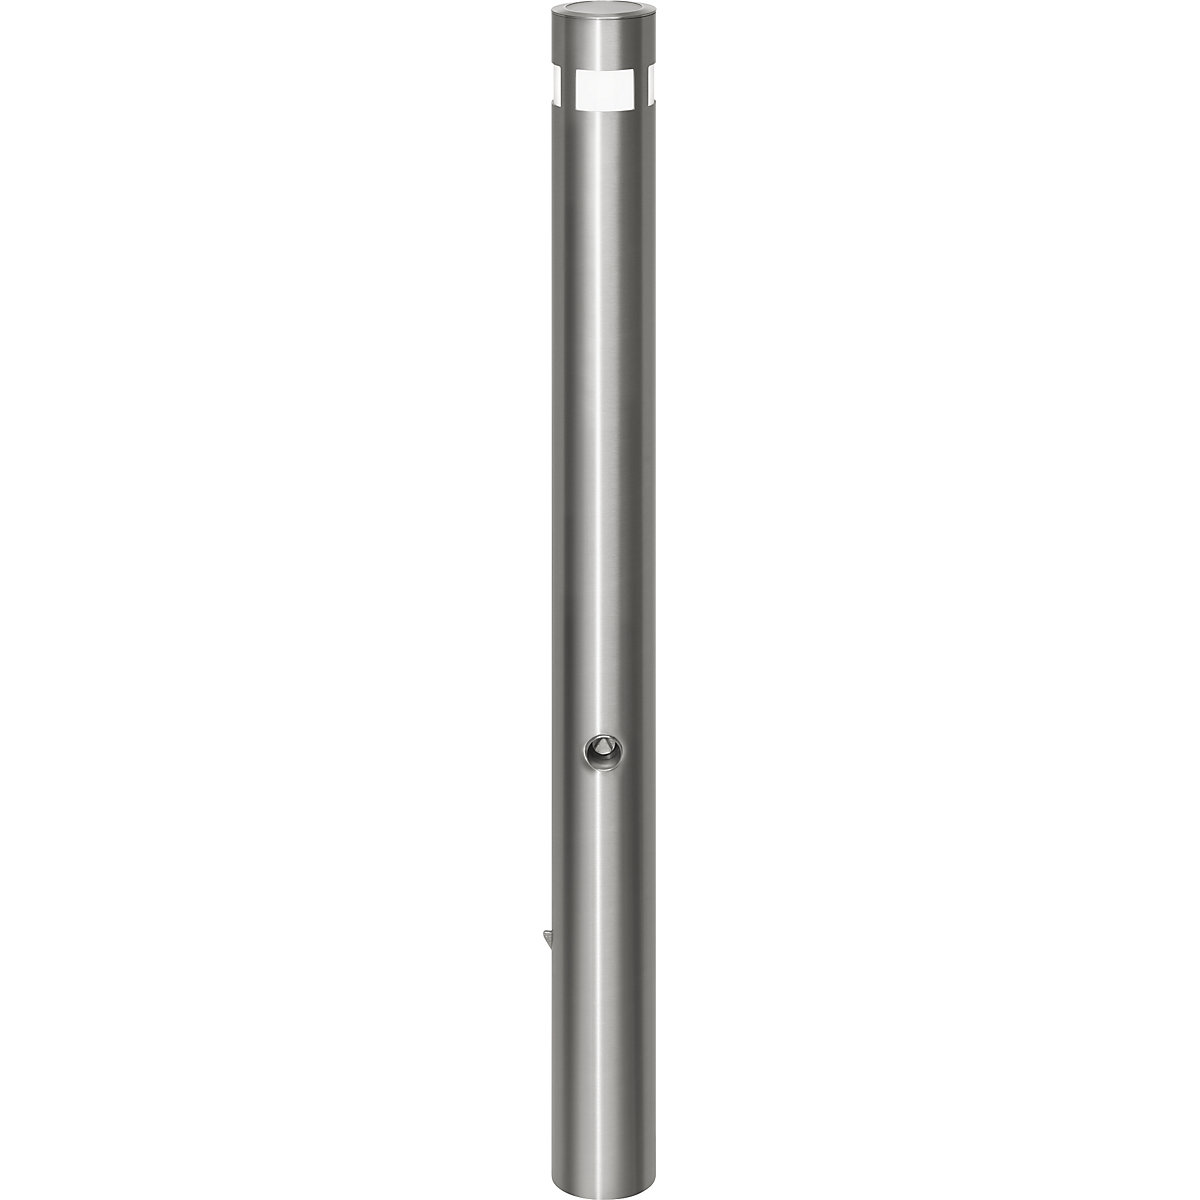 Edelstahl-Sperrpfosten, Ø 102 mm, mit Solar-Leuchtkopf, zum Einbetonieren, Bodenhülse, Dreikantverschluss